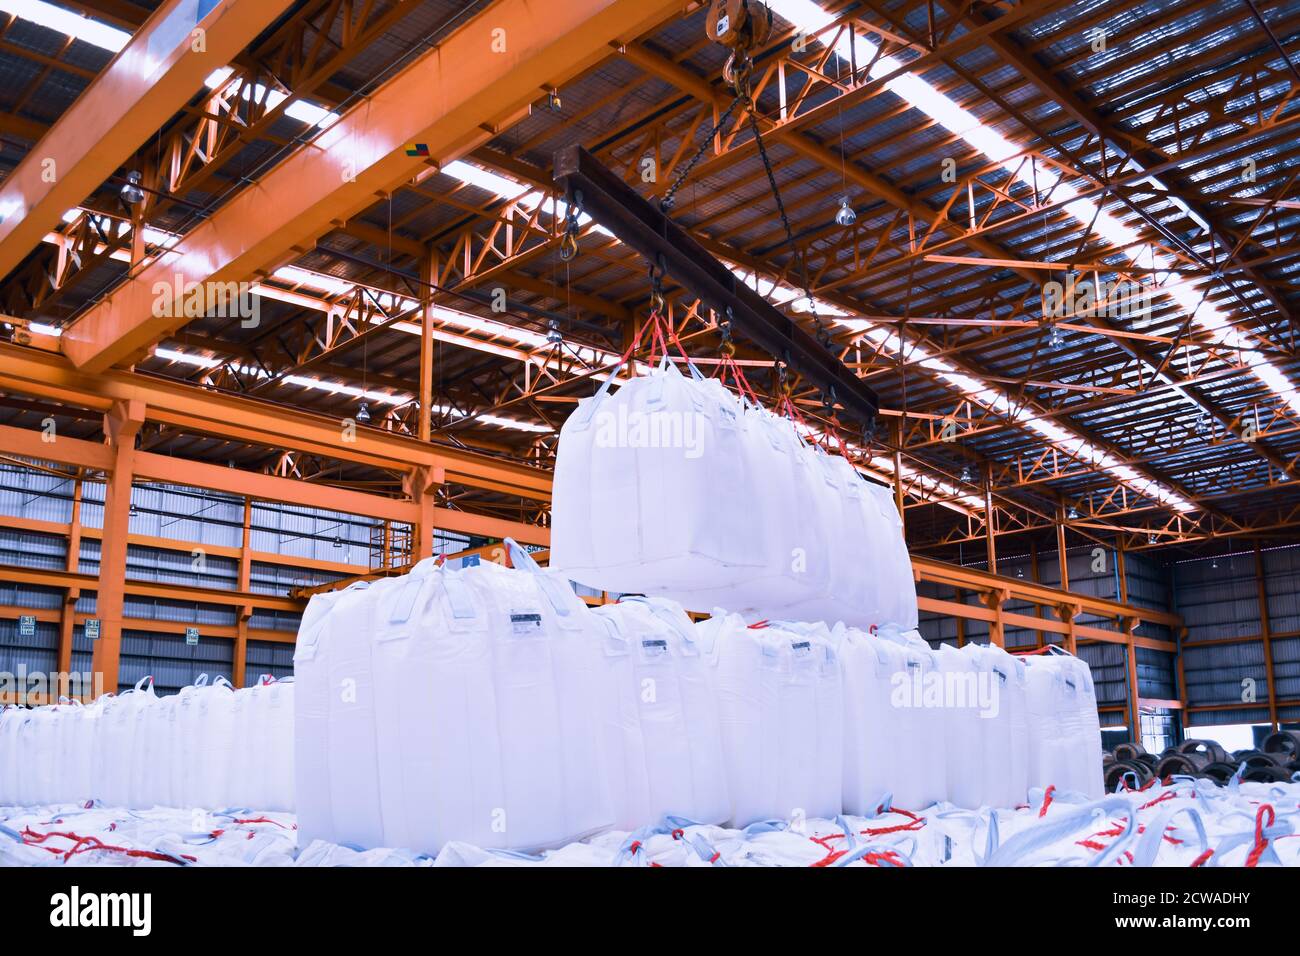 Un pont roulant lève les sacs géants de tapioca à l'aide d'une barre de répartition dans l'entrepôt de stockage. Chargement en vrac dans un équipement de manutention de sacs jumbo. Banque D'Images